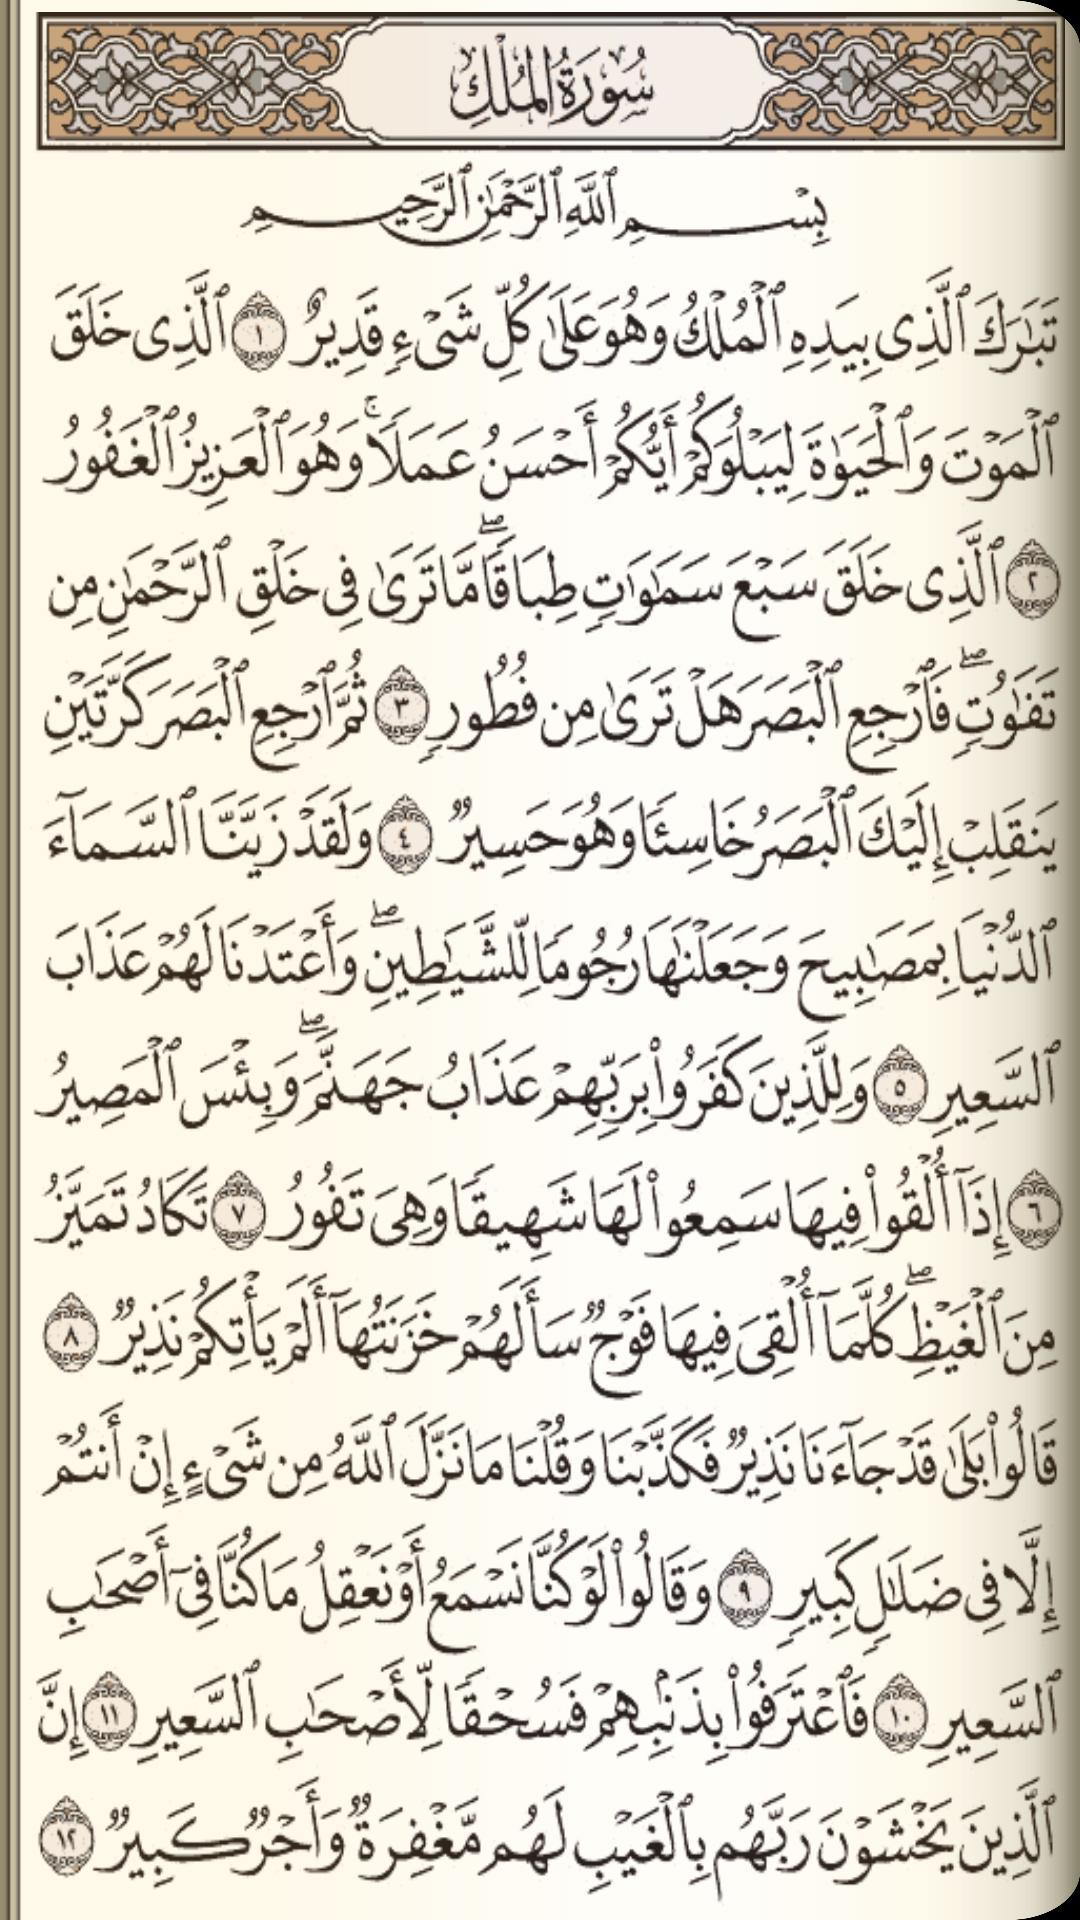 القرآن الكريم مع تفسير ومعاني كلمات 6.1 Screenshot 2